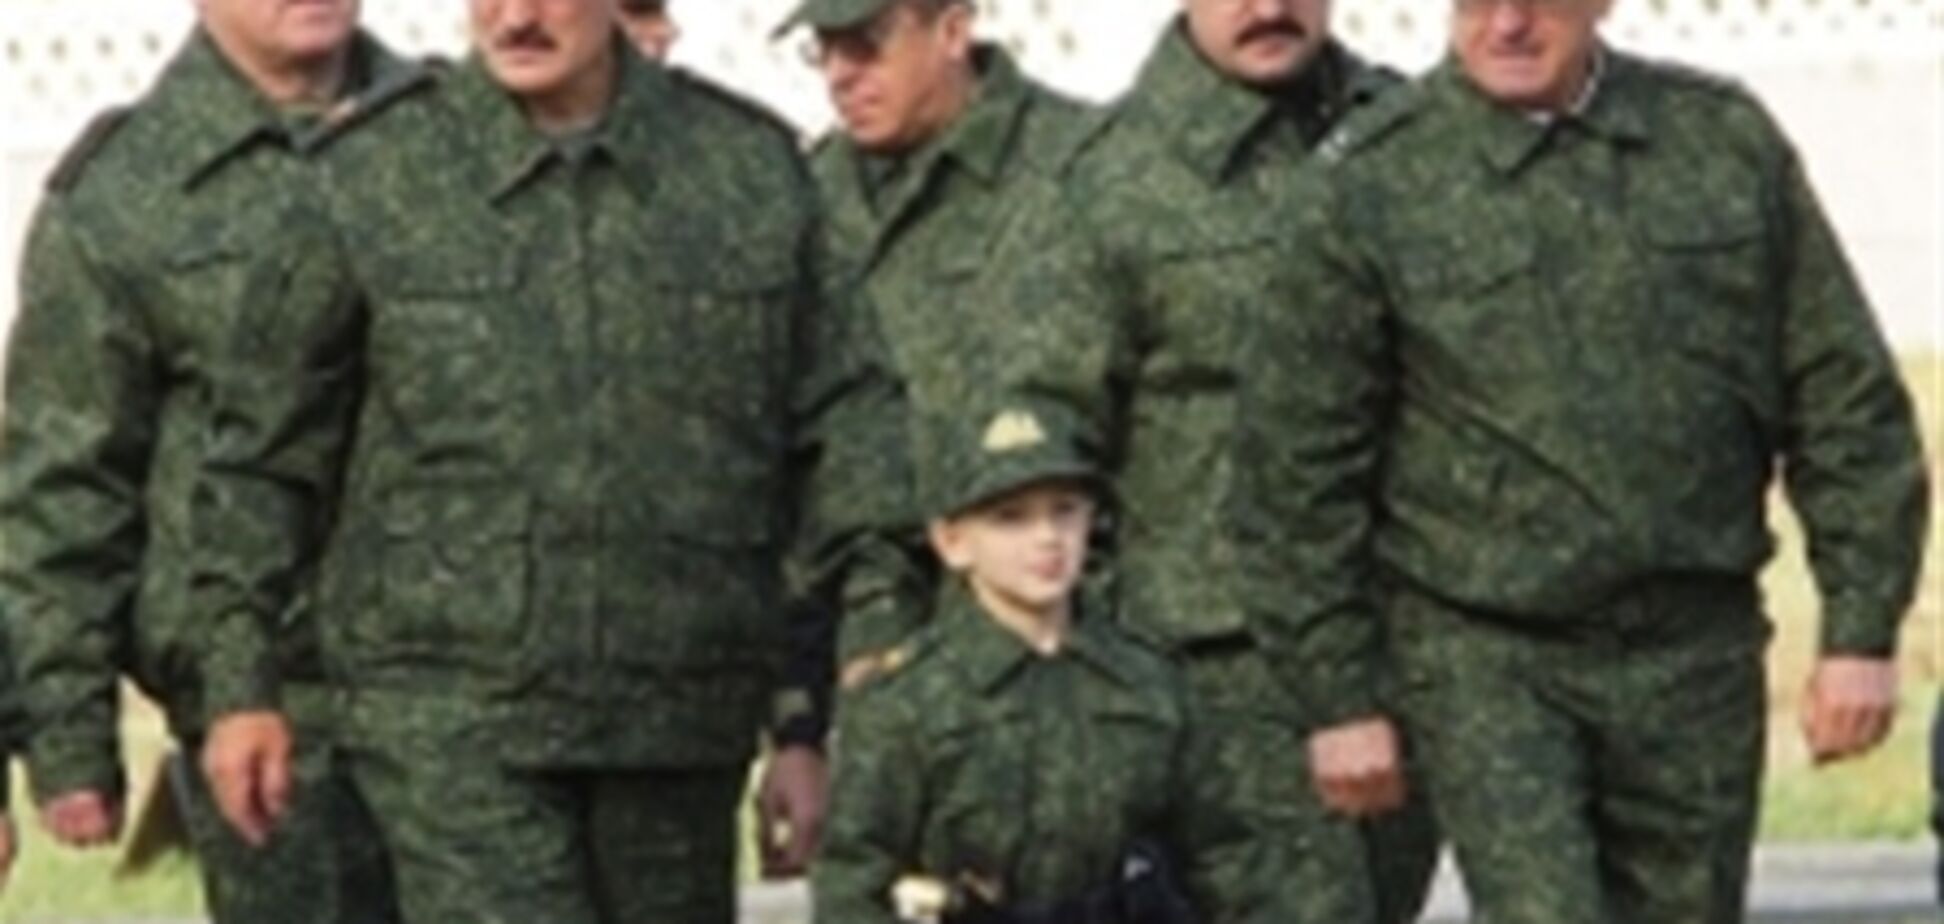 Лукашенко представил Чавесу своего преемника